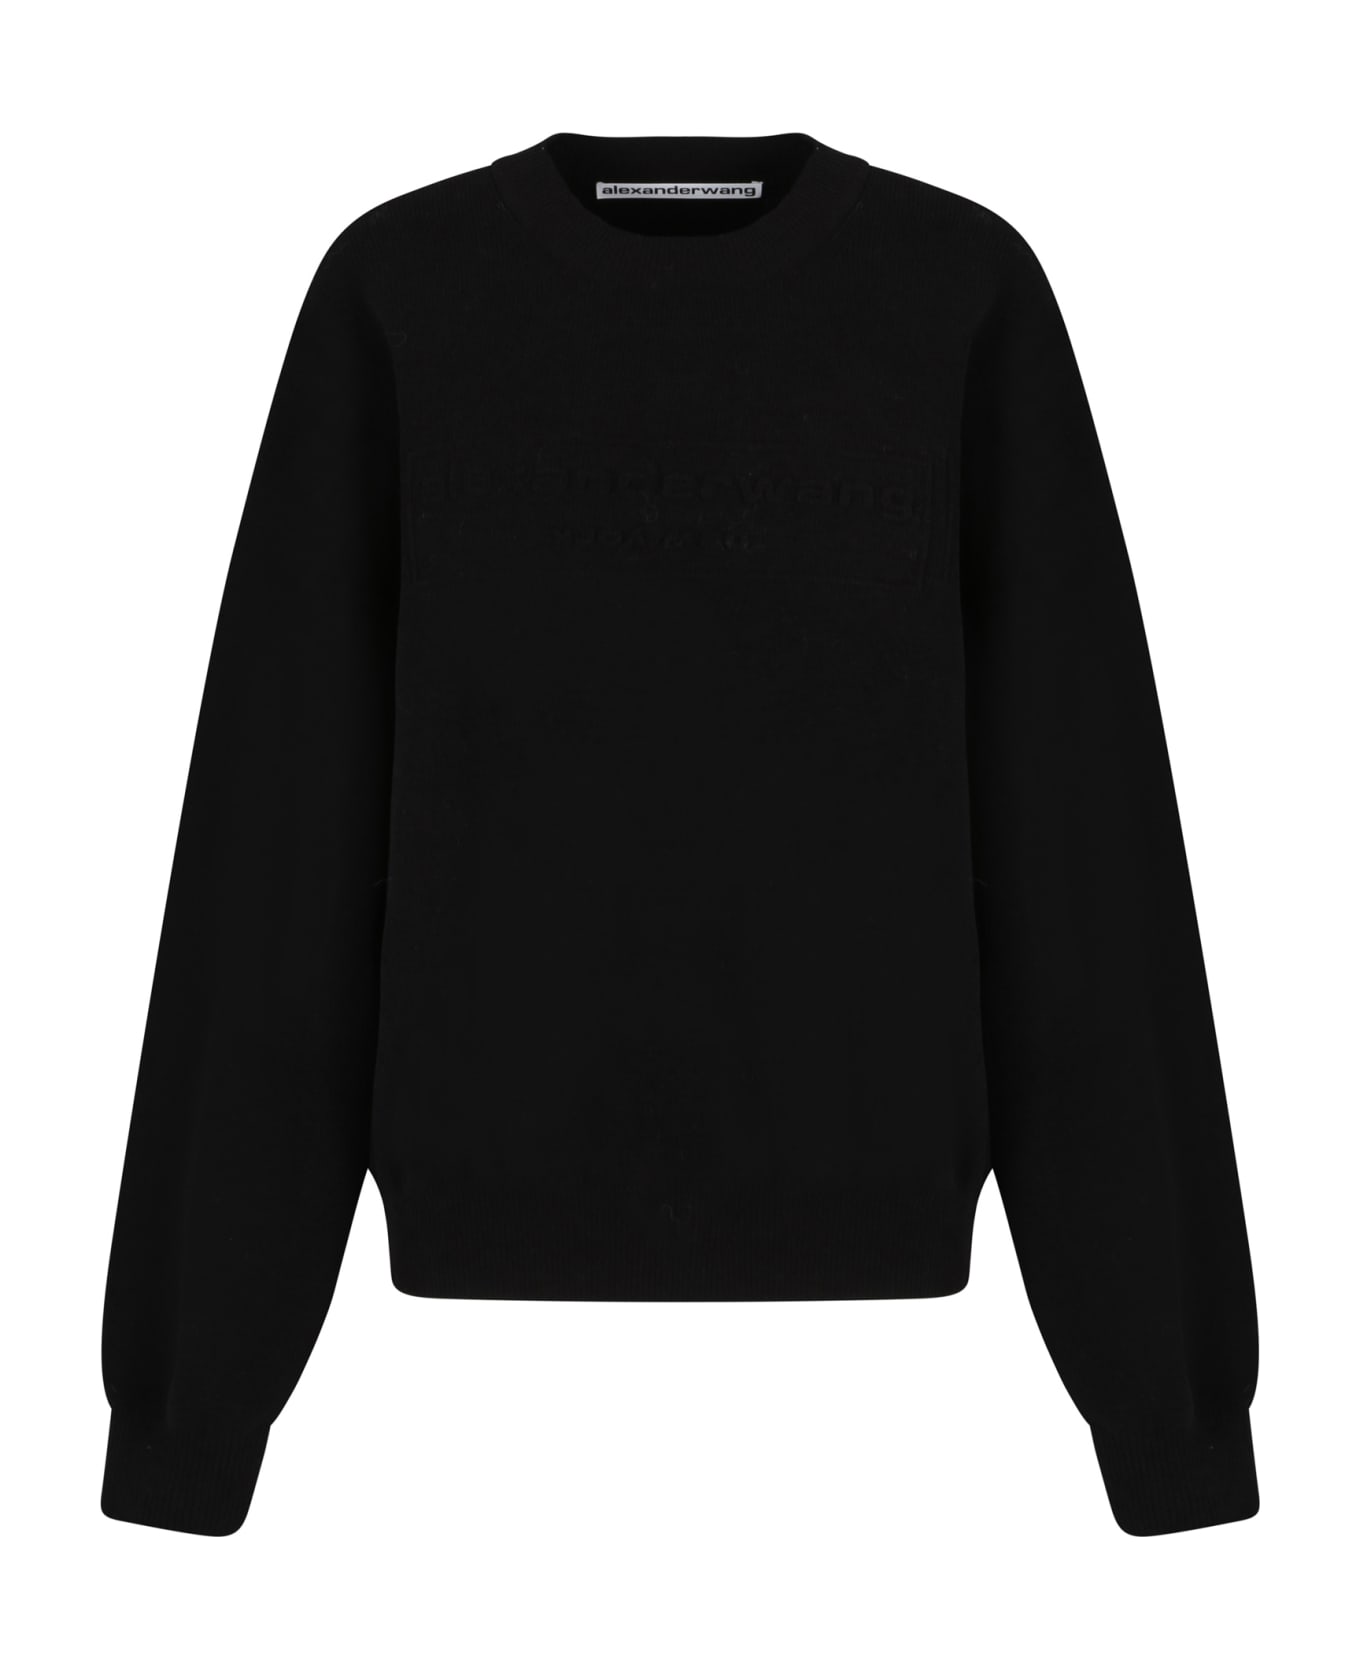 Alexander Wang Sweater - Black フリース